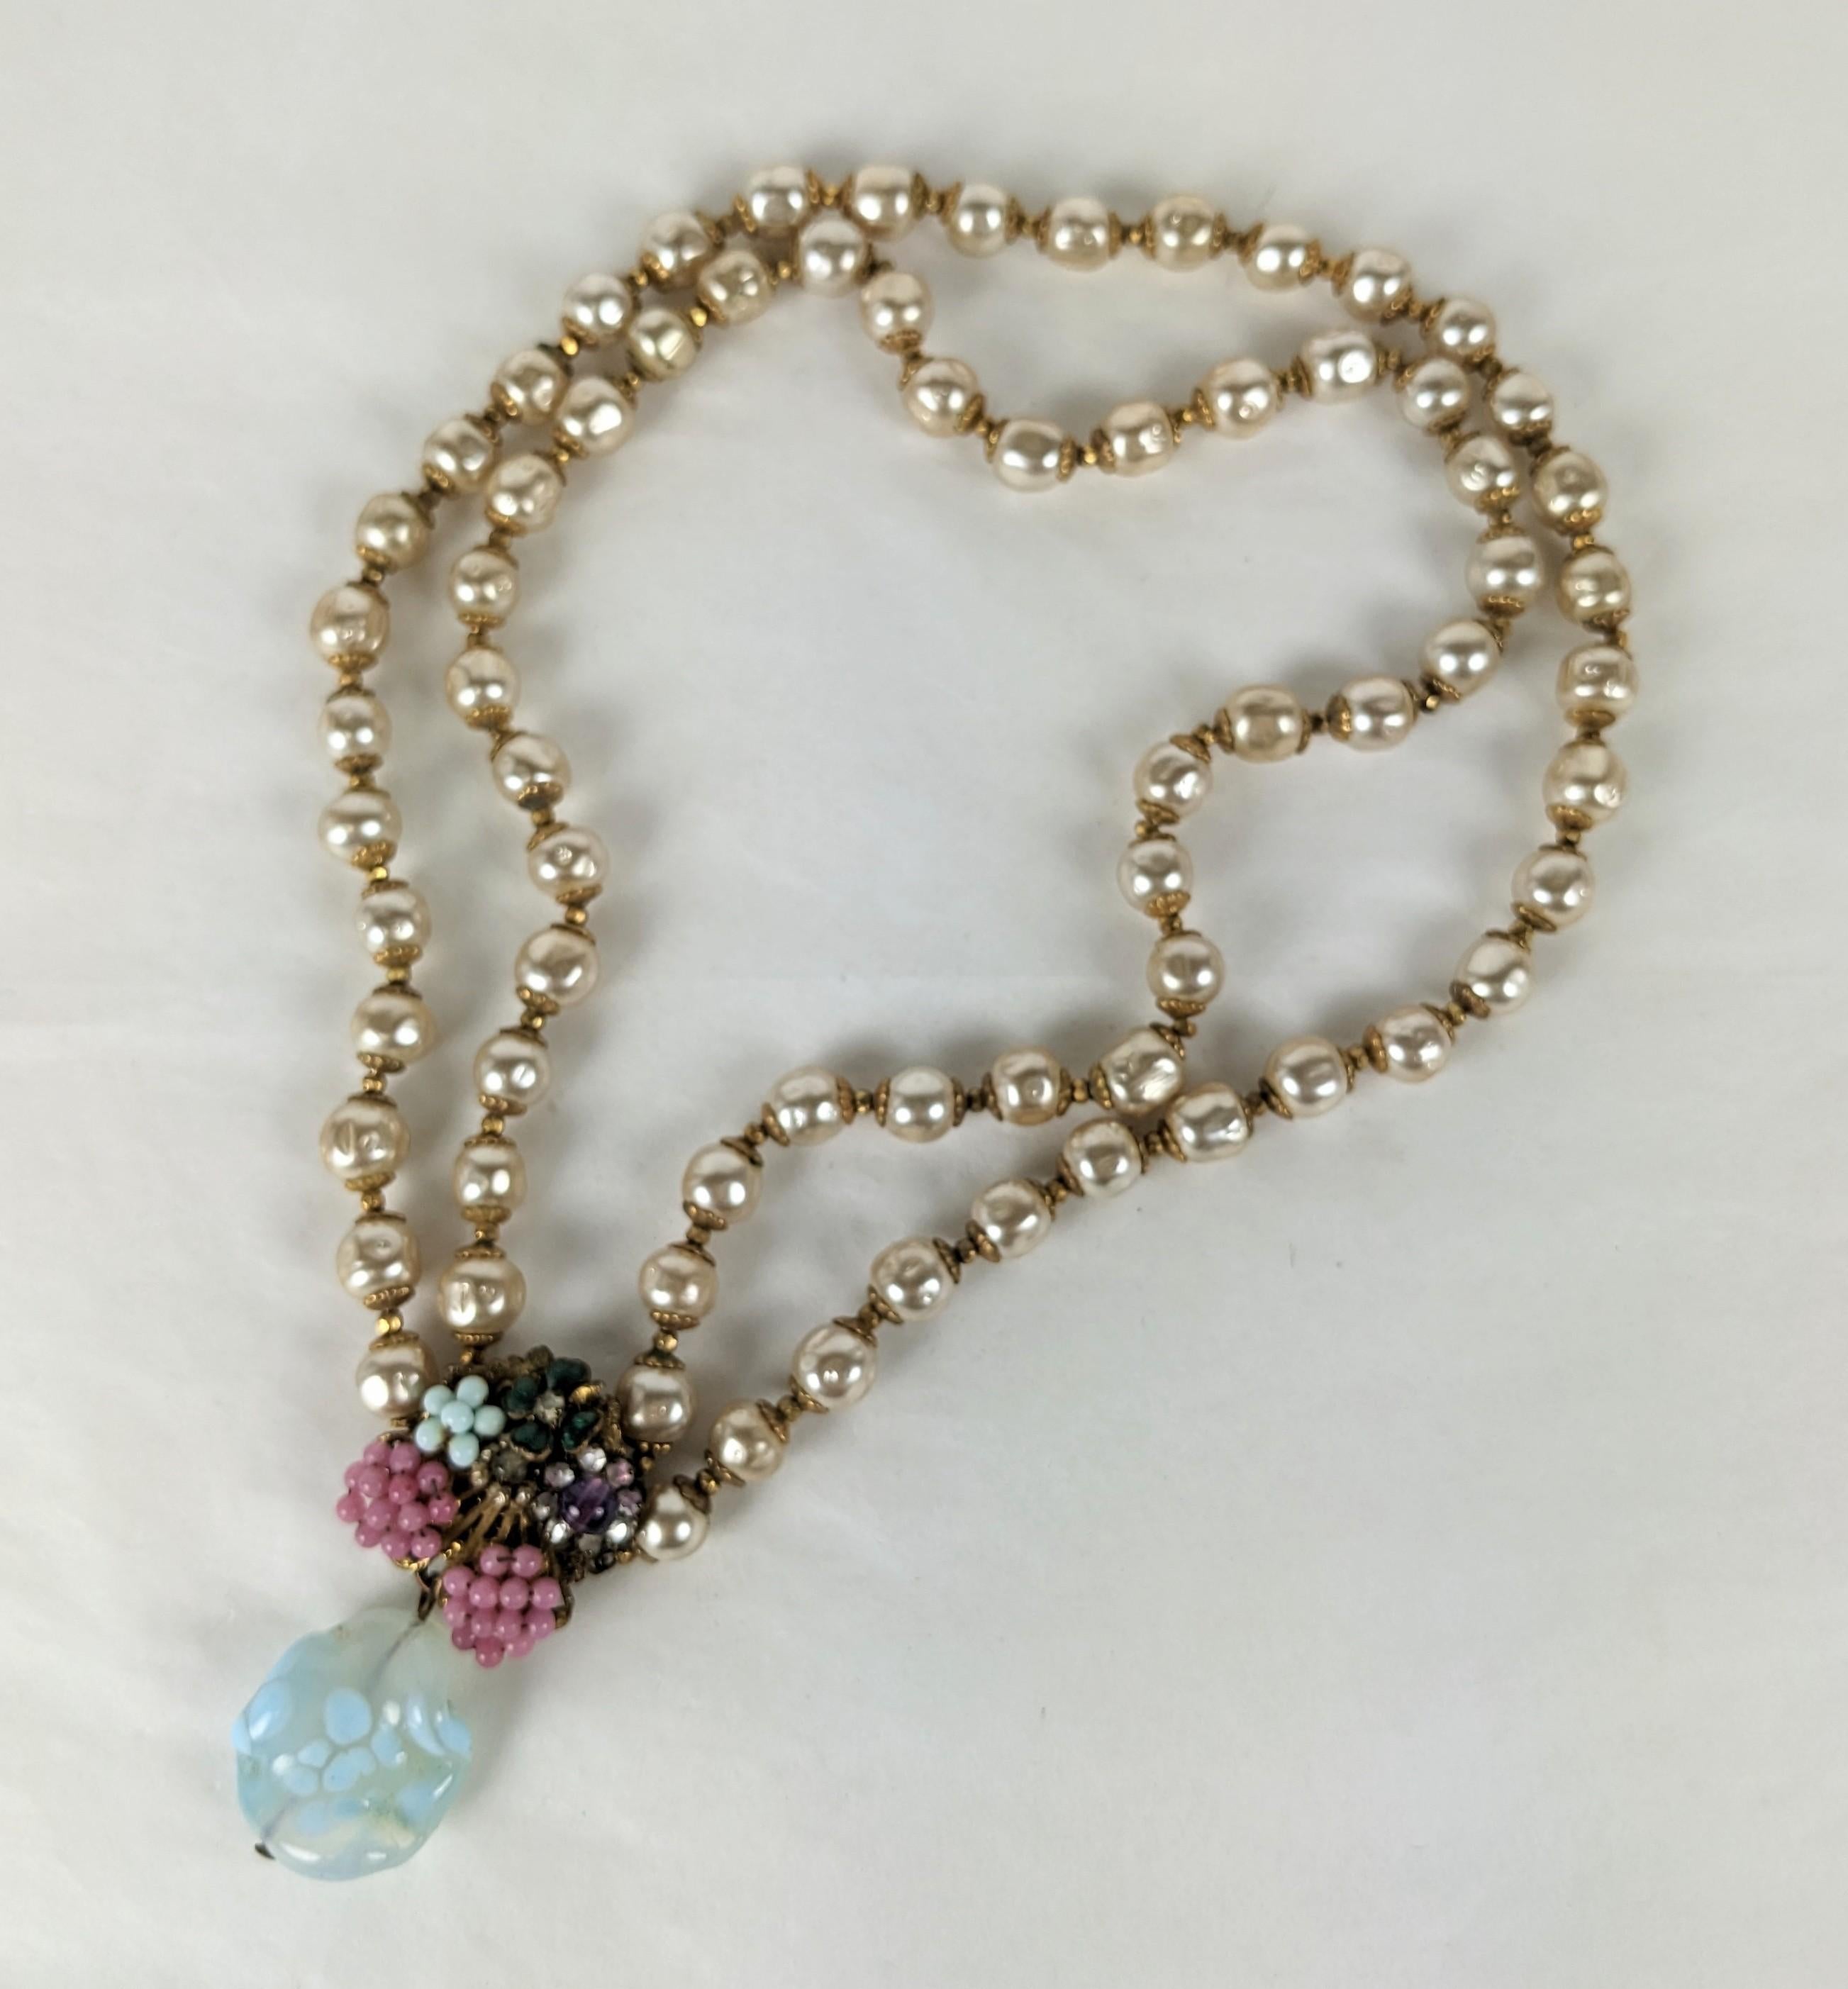 Collier de perles Miriam Haskell avec pate de verre, pendentif en perles de rocaille des années 1940. Perles Signature Haskell avec intercalaires dorés. Le fermoir forme la pièce centrale avec des perles de rocaille en verre, un trèfle en émail, des